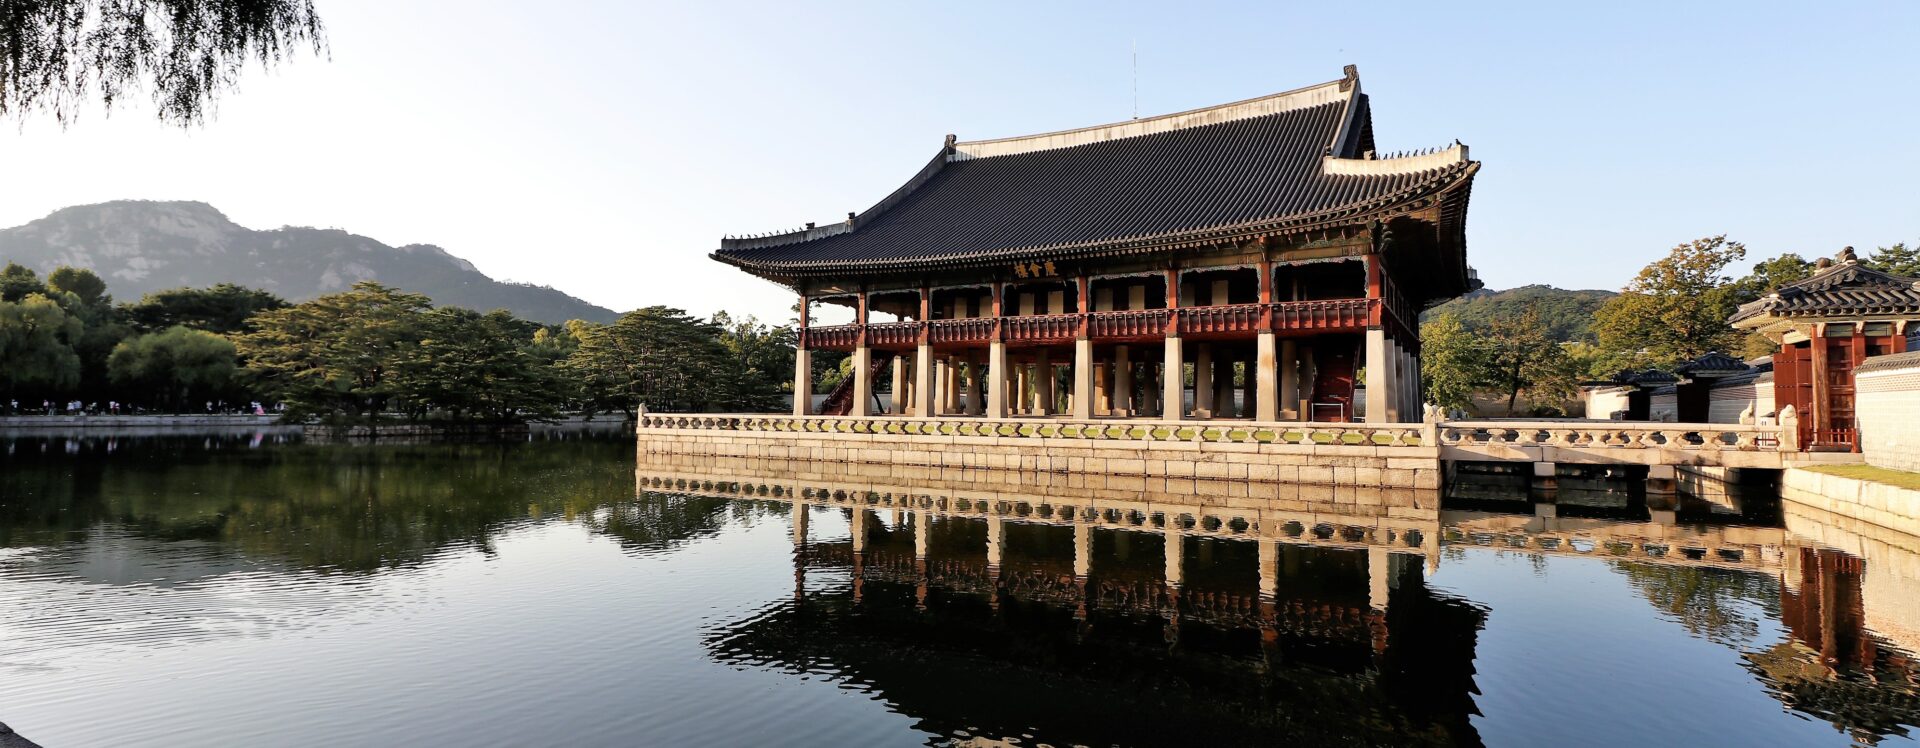 Palácio Gyeongbok, palácio real localizado em Jongno-gu, ao norte de Seul, Coreia do Sul